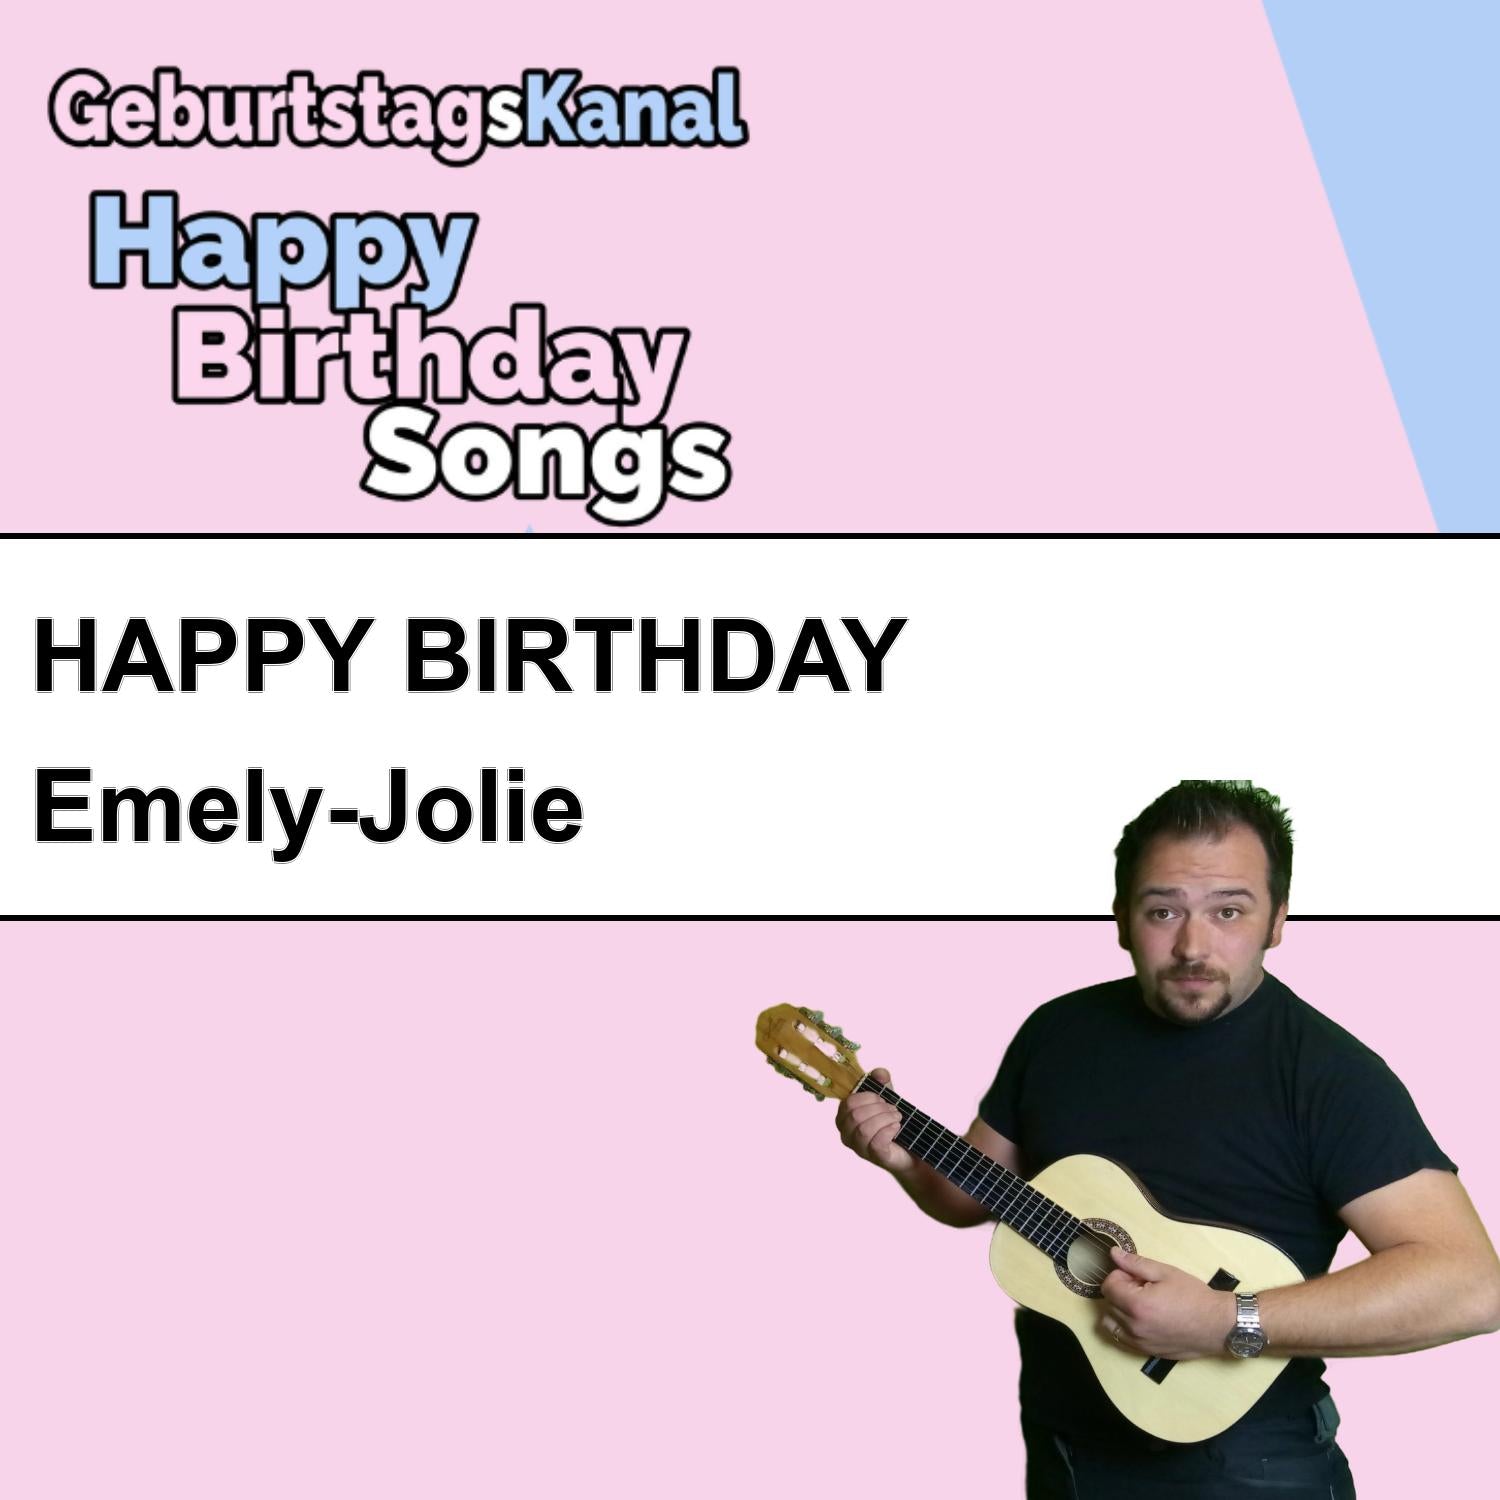 Produktbild Happy Birthday to you Emely-Jolie mit Wunschgrußbotschaft